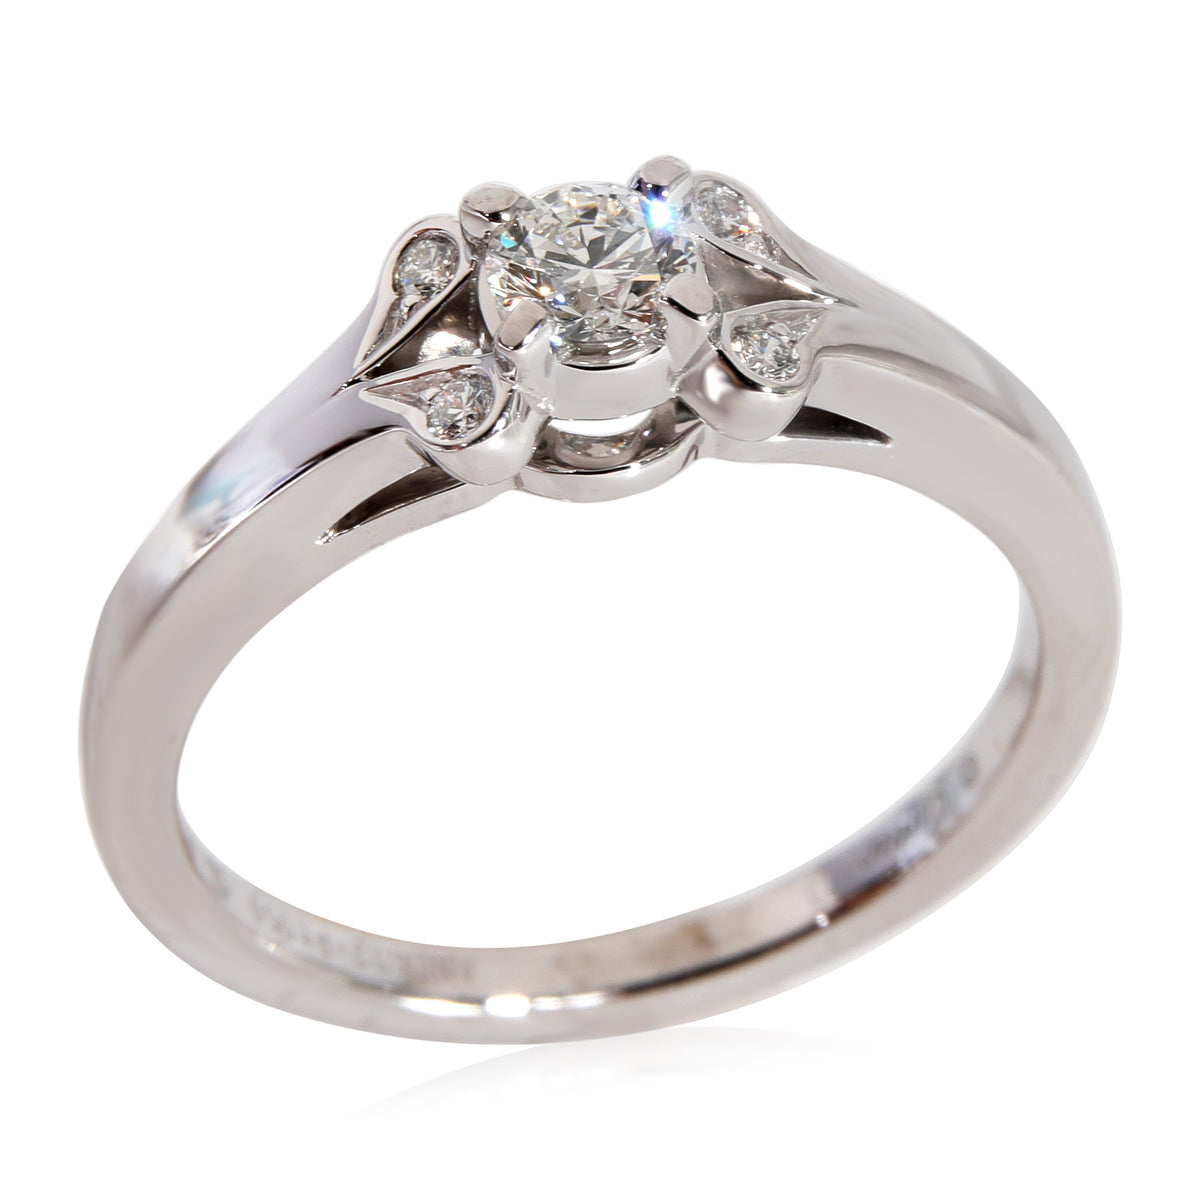 Cartier Ballerine Diamond Engagement Ring in Platinum F VS2 0.22 CTW